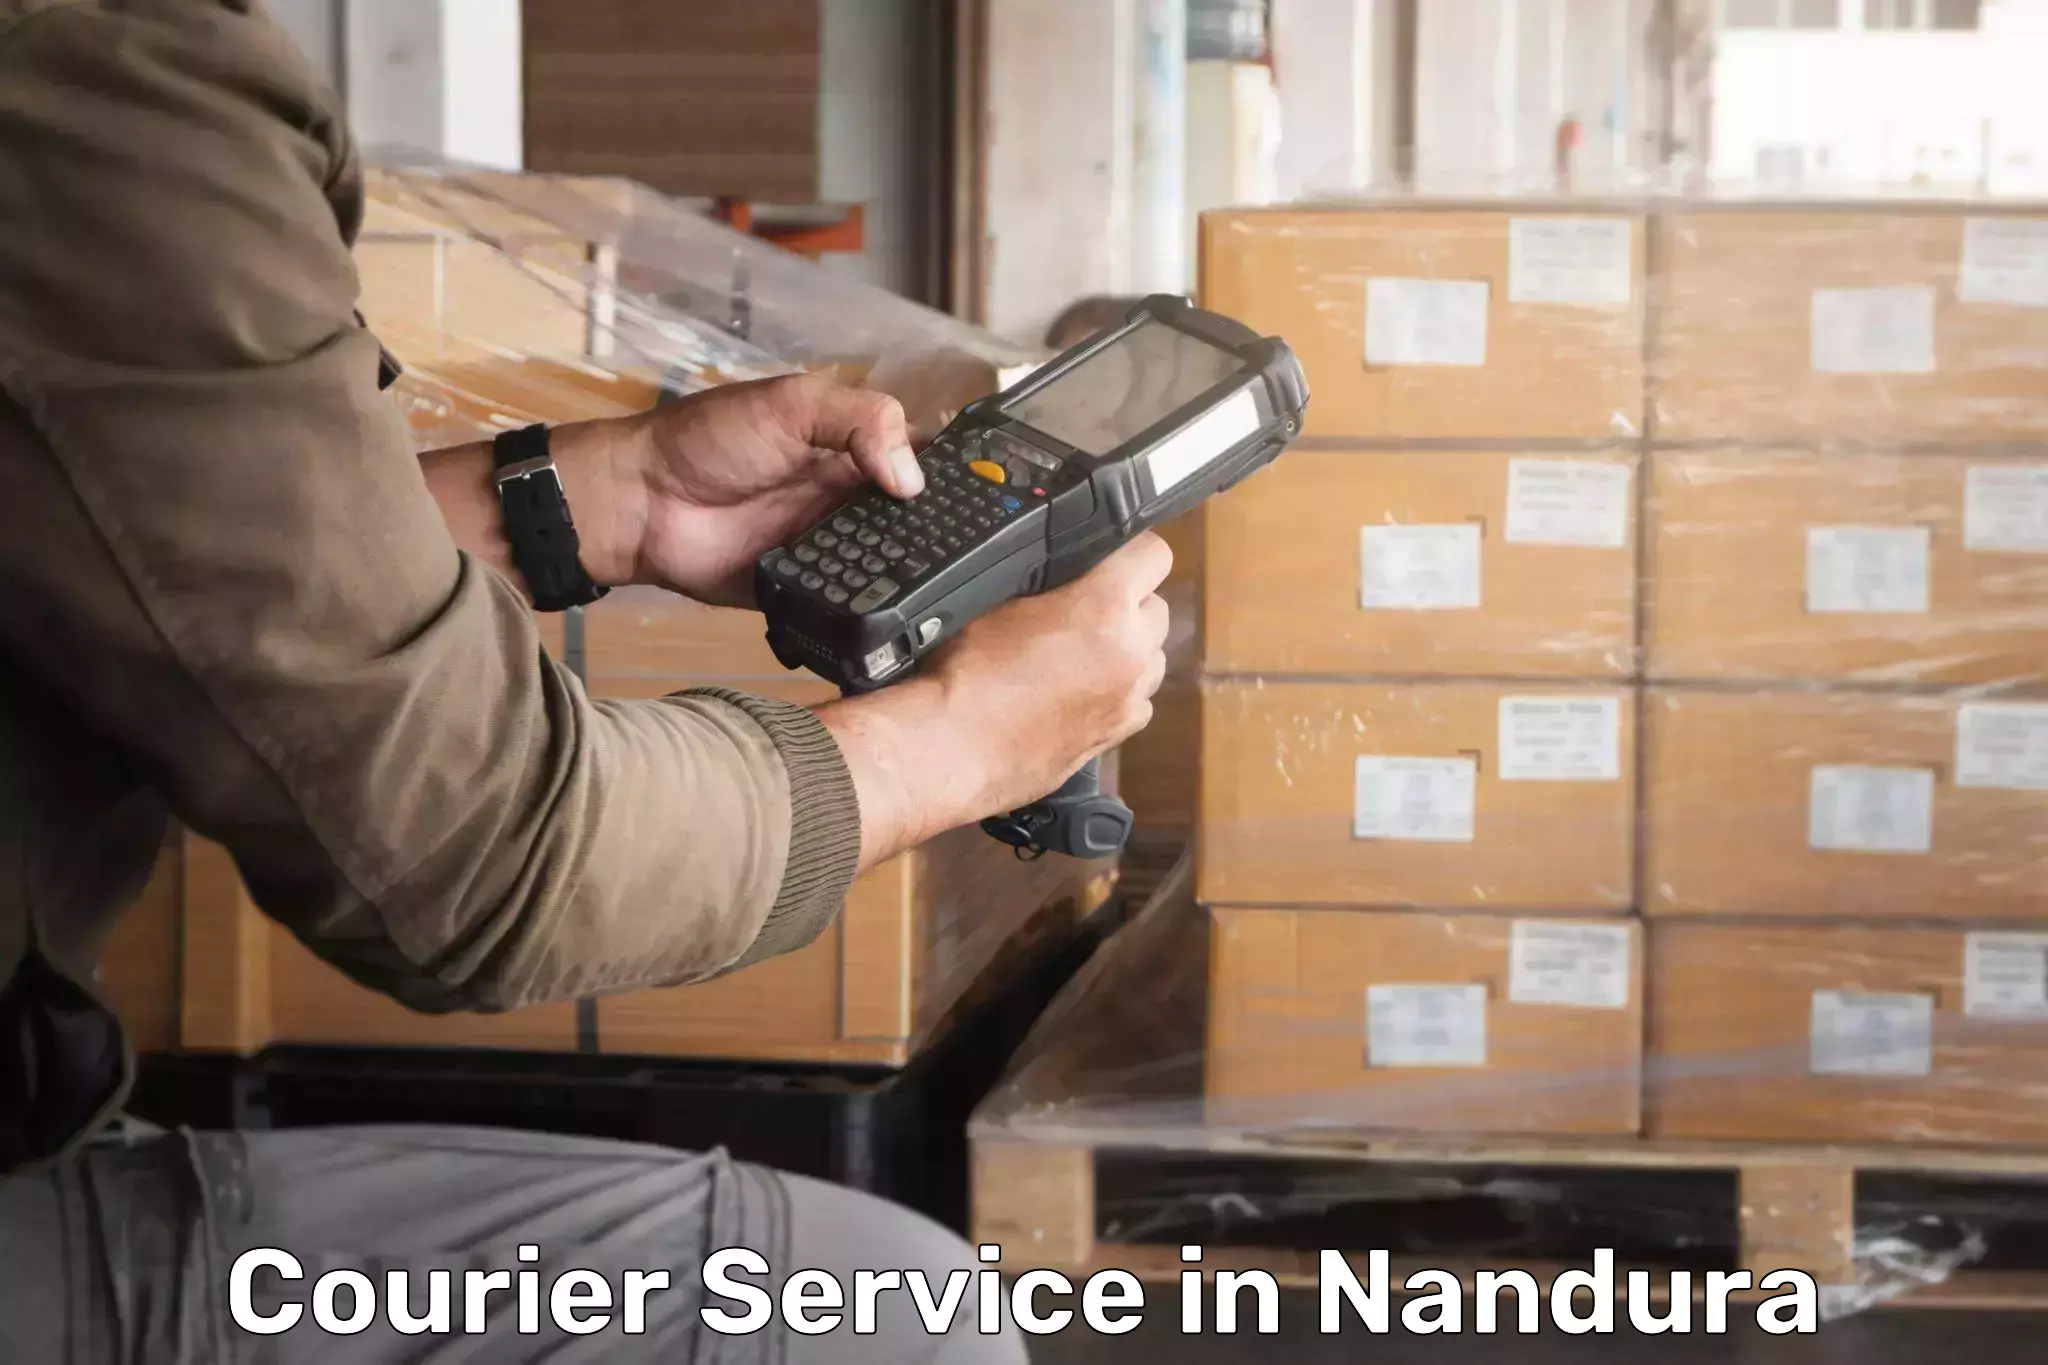 Urgent courier needs in Nandura